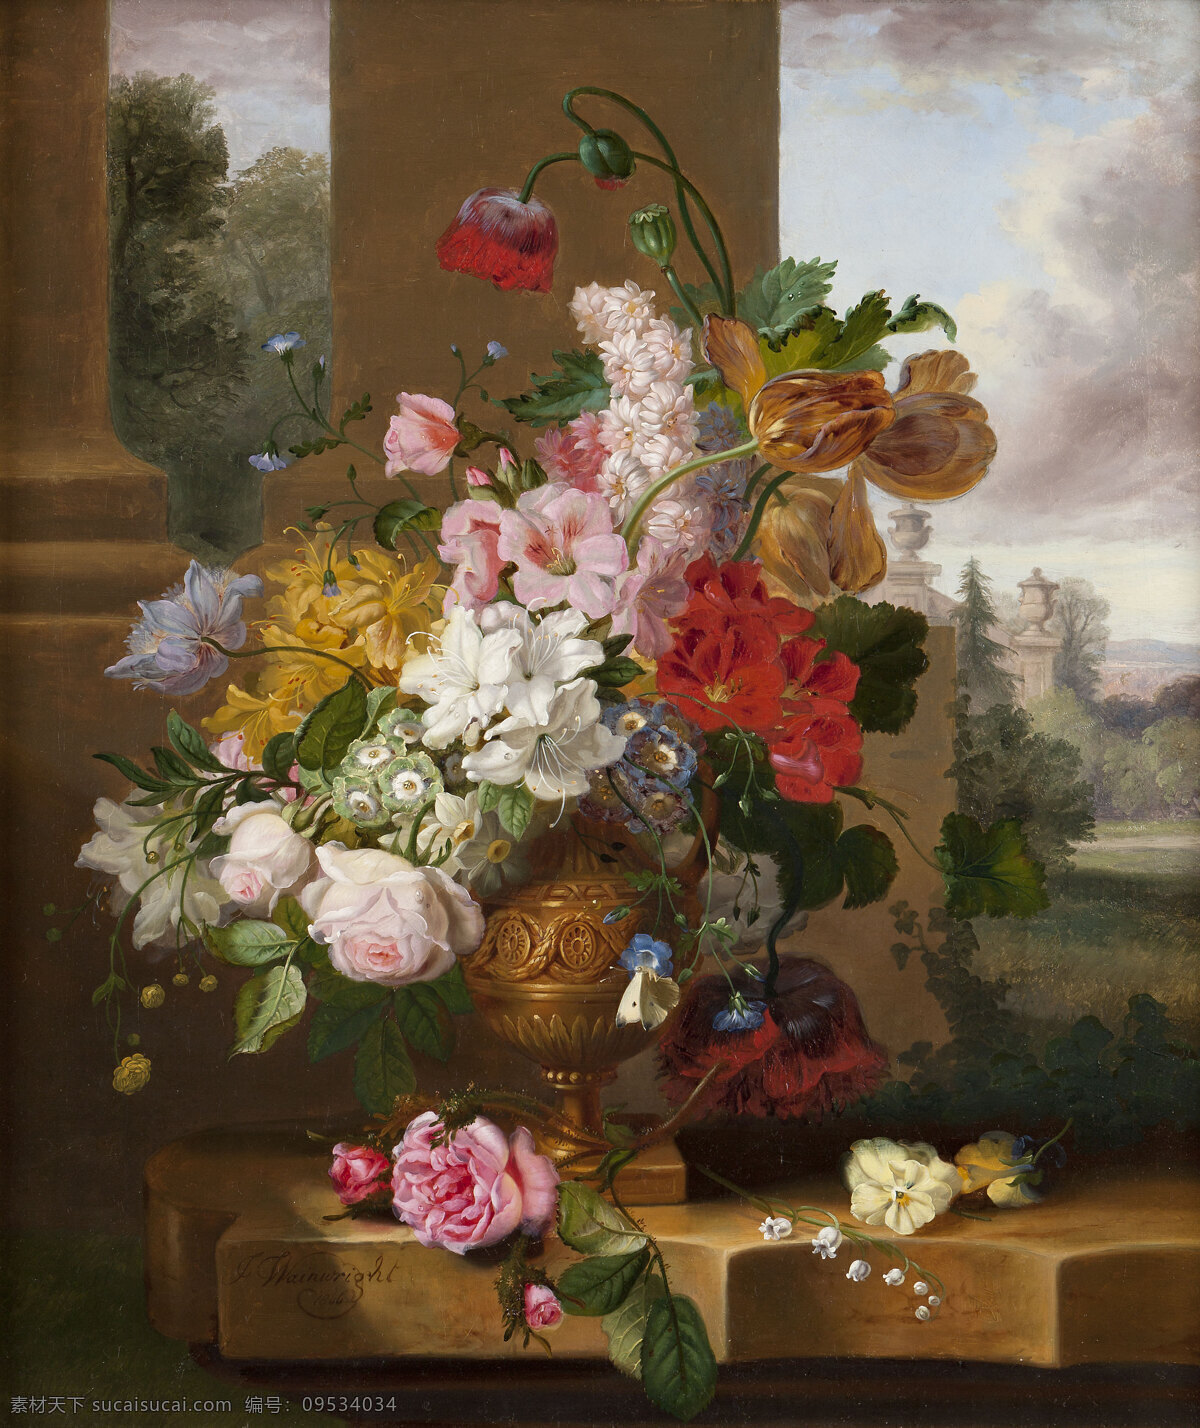 静物鲜花 混搭鲜花 永恒之美 花瓶 台子 野外 白蝴蝶 20世纪油画 油画 绘画书法 文化艺术